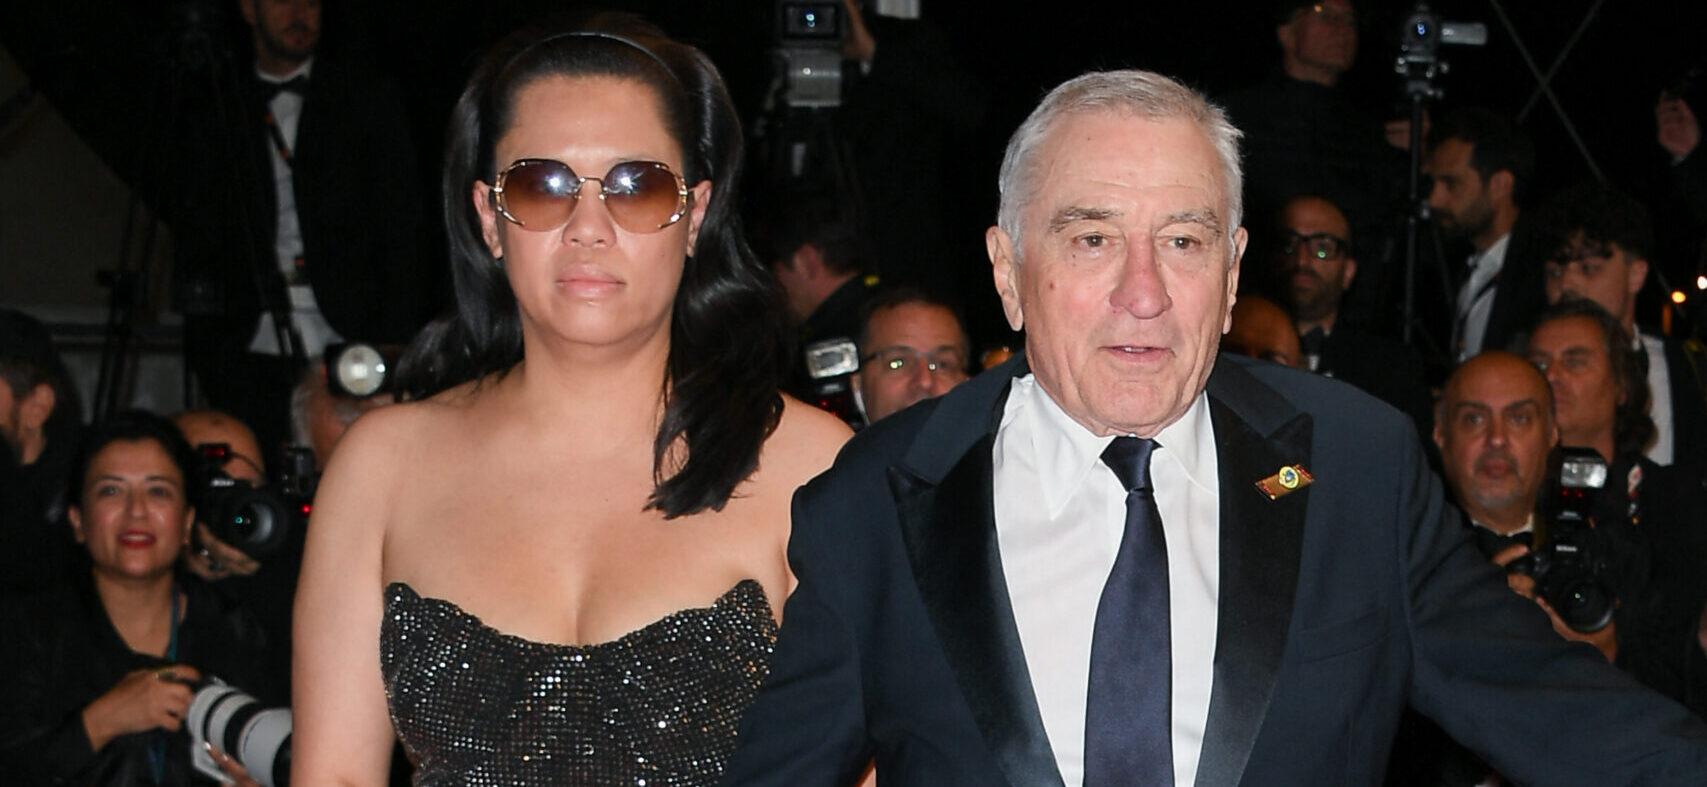 Robert De Niro and partner Tiffany Chen at Cannes